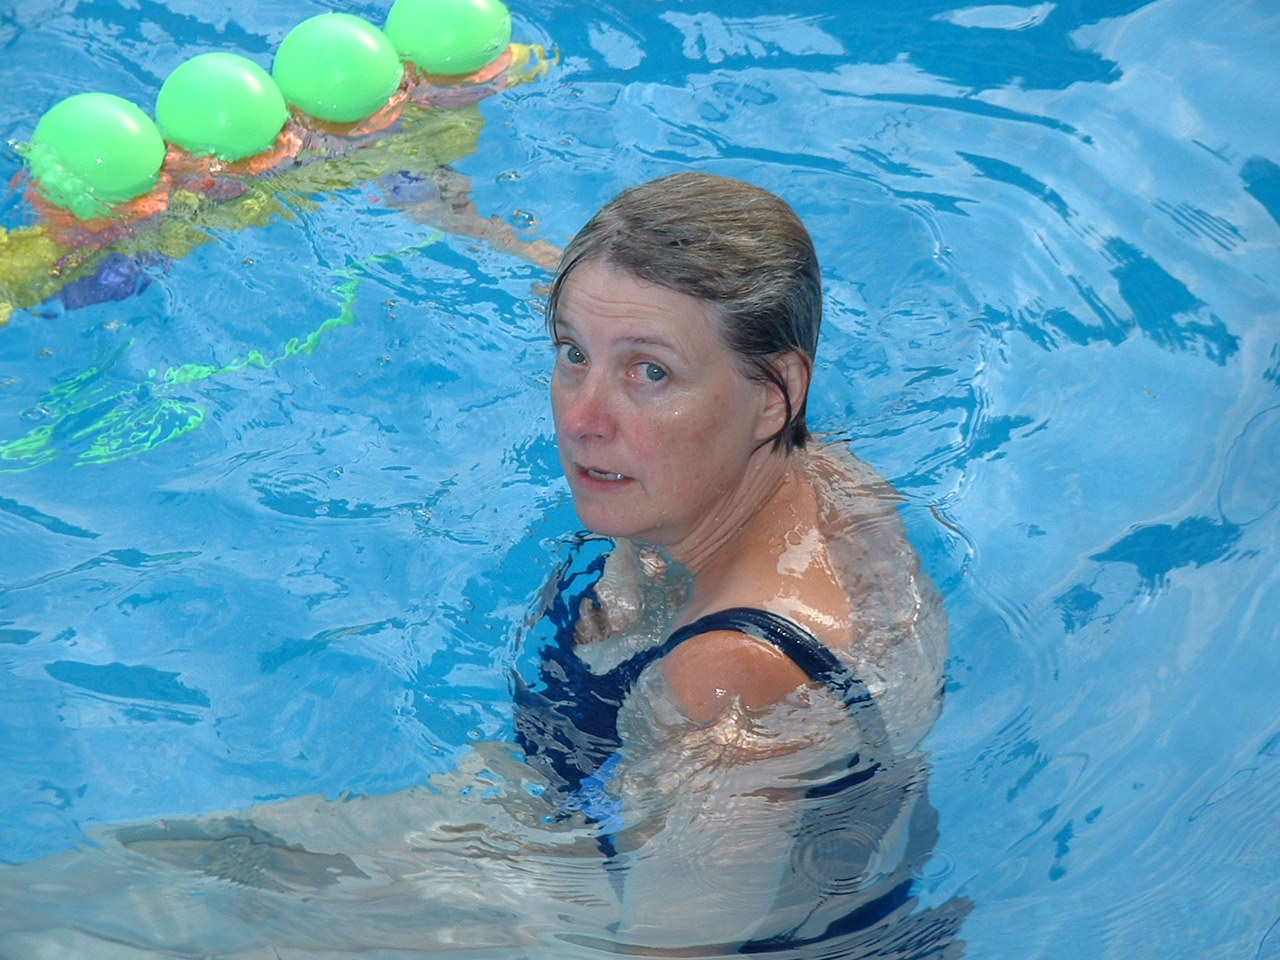 Dianne in pool